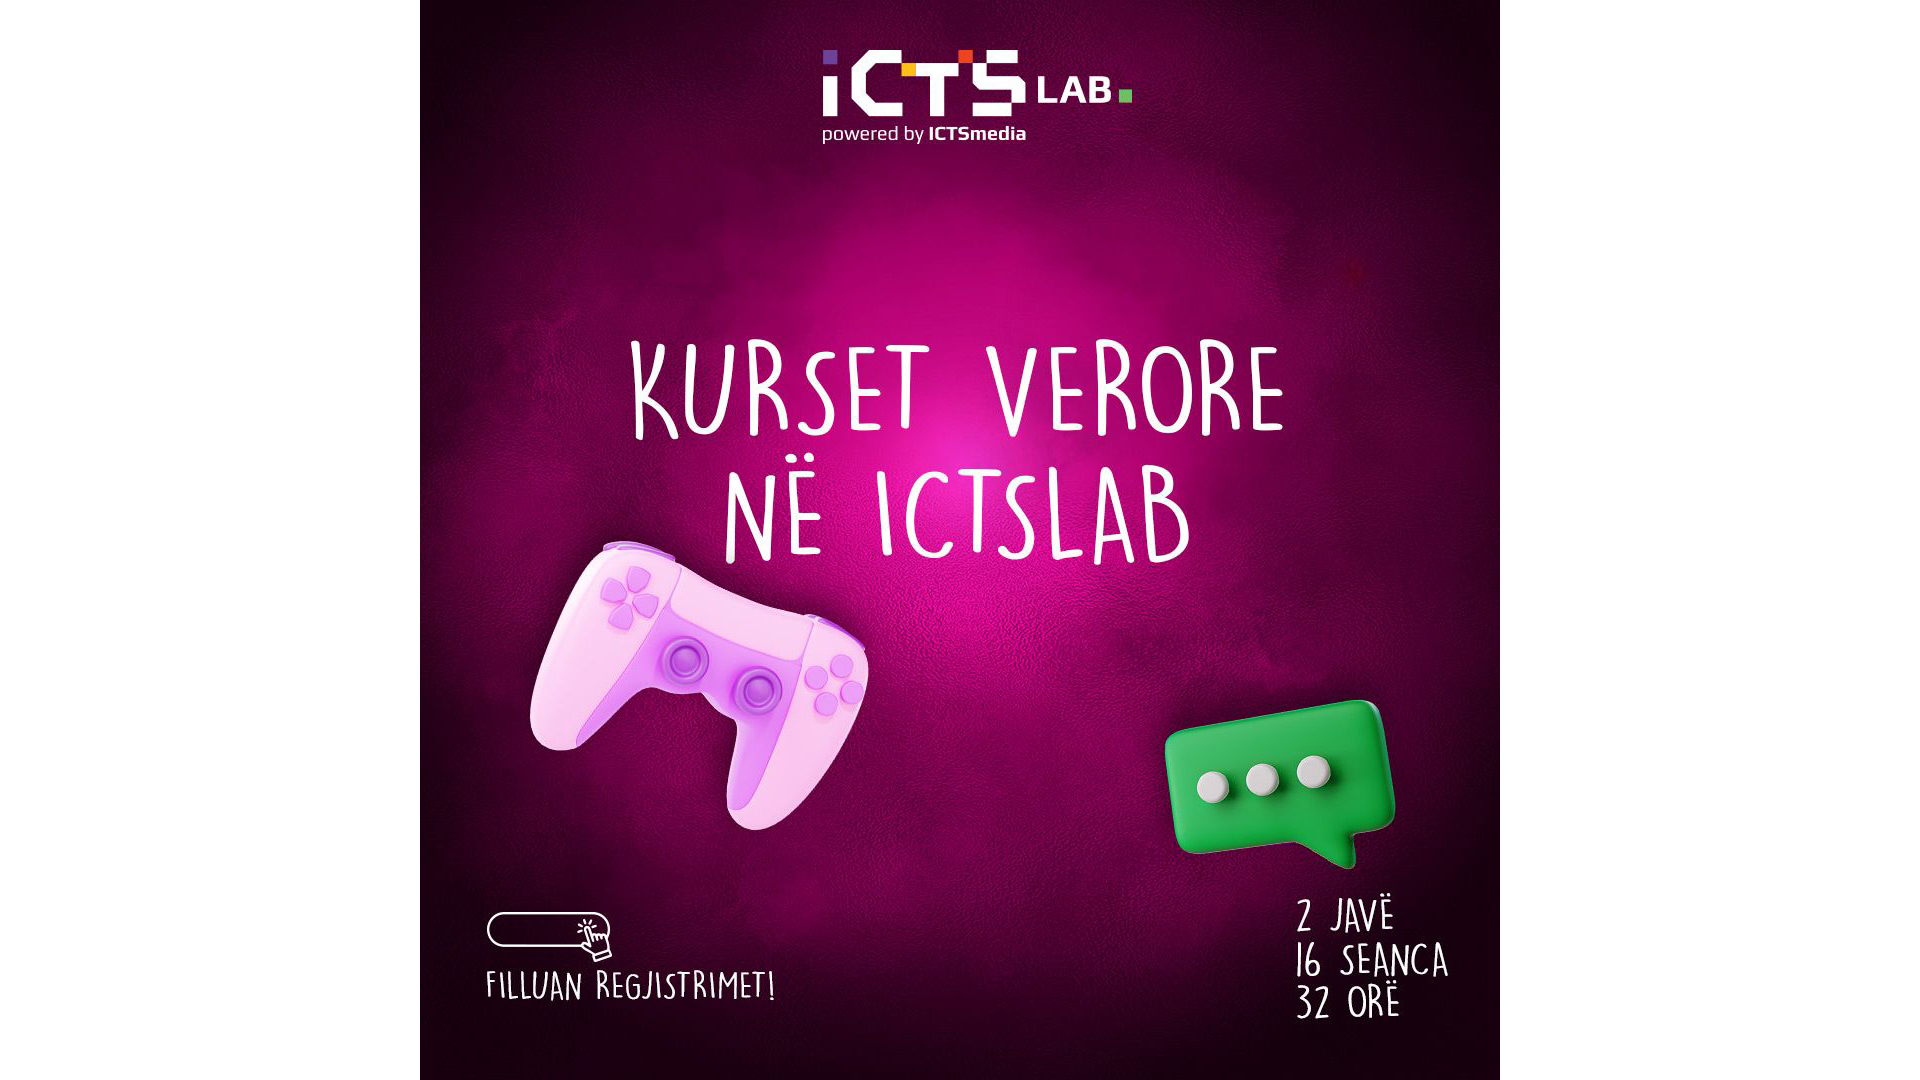  Shkolla e Verore e Kodimit në ICTSlab hap regjistrimet, fëmijët mësojnë kodim përmes argëtimit